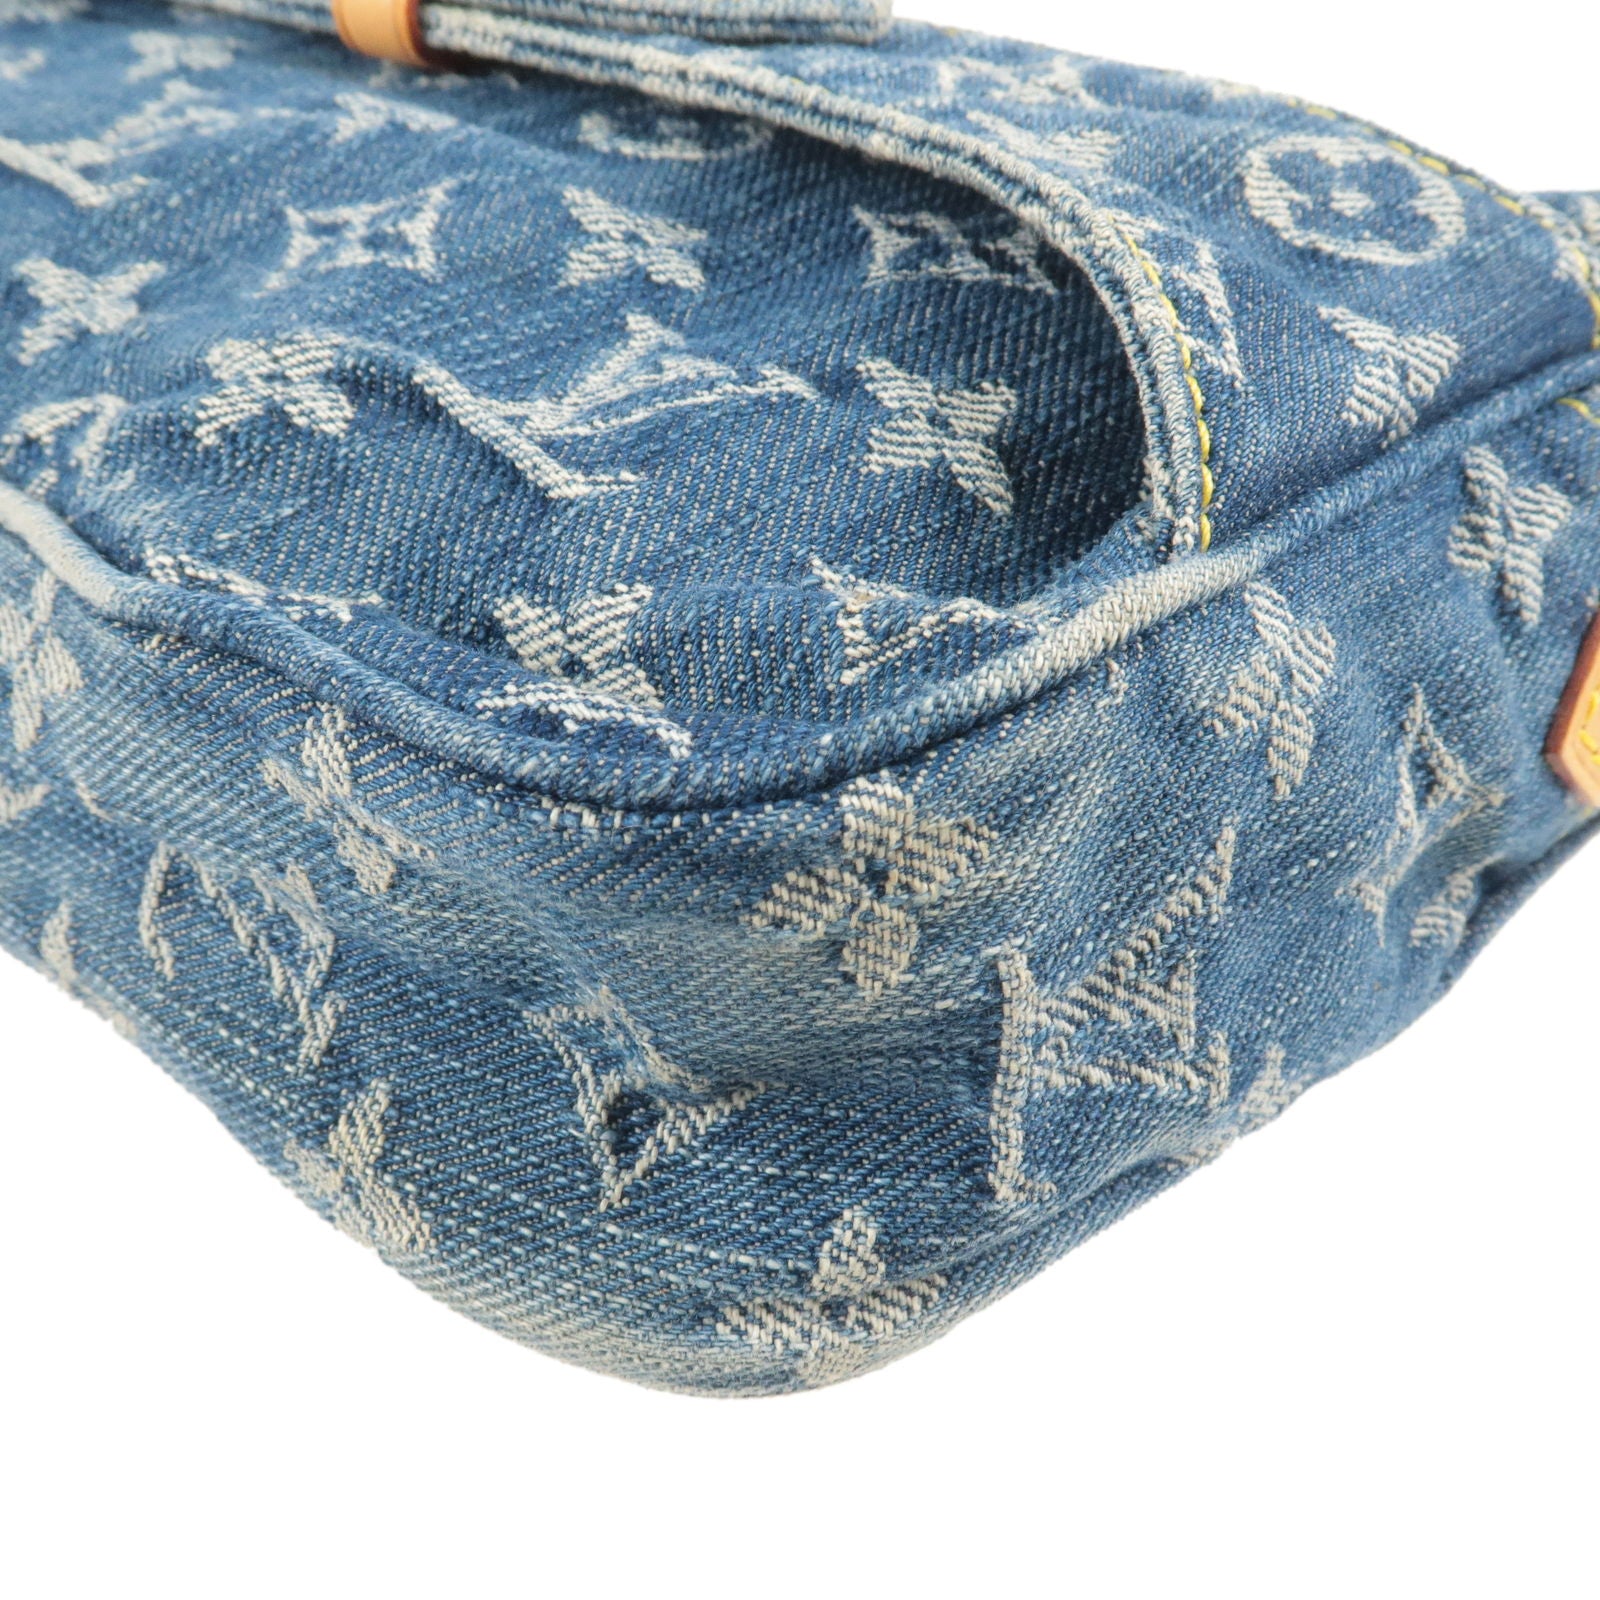 Louis-Vuitton-Monogram-Denim-Bum-Bag-Waist-Bag-Blue-M95347 – dct